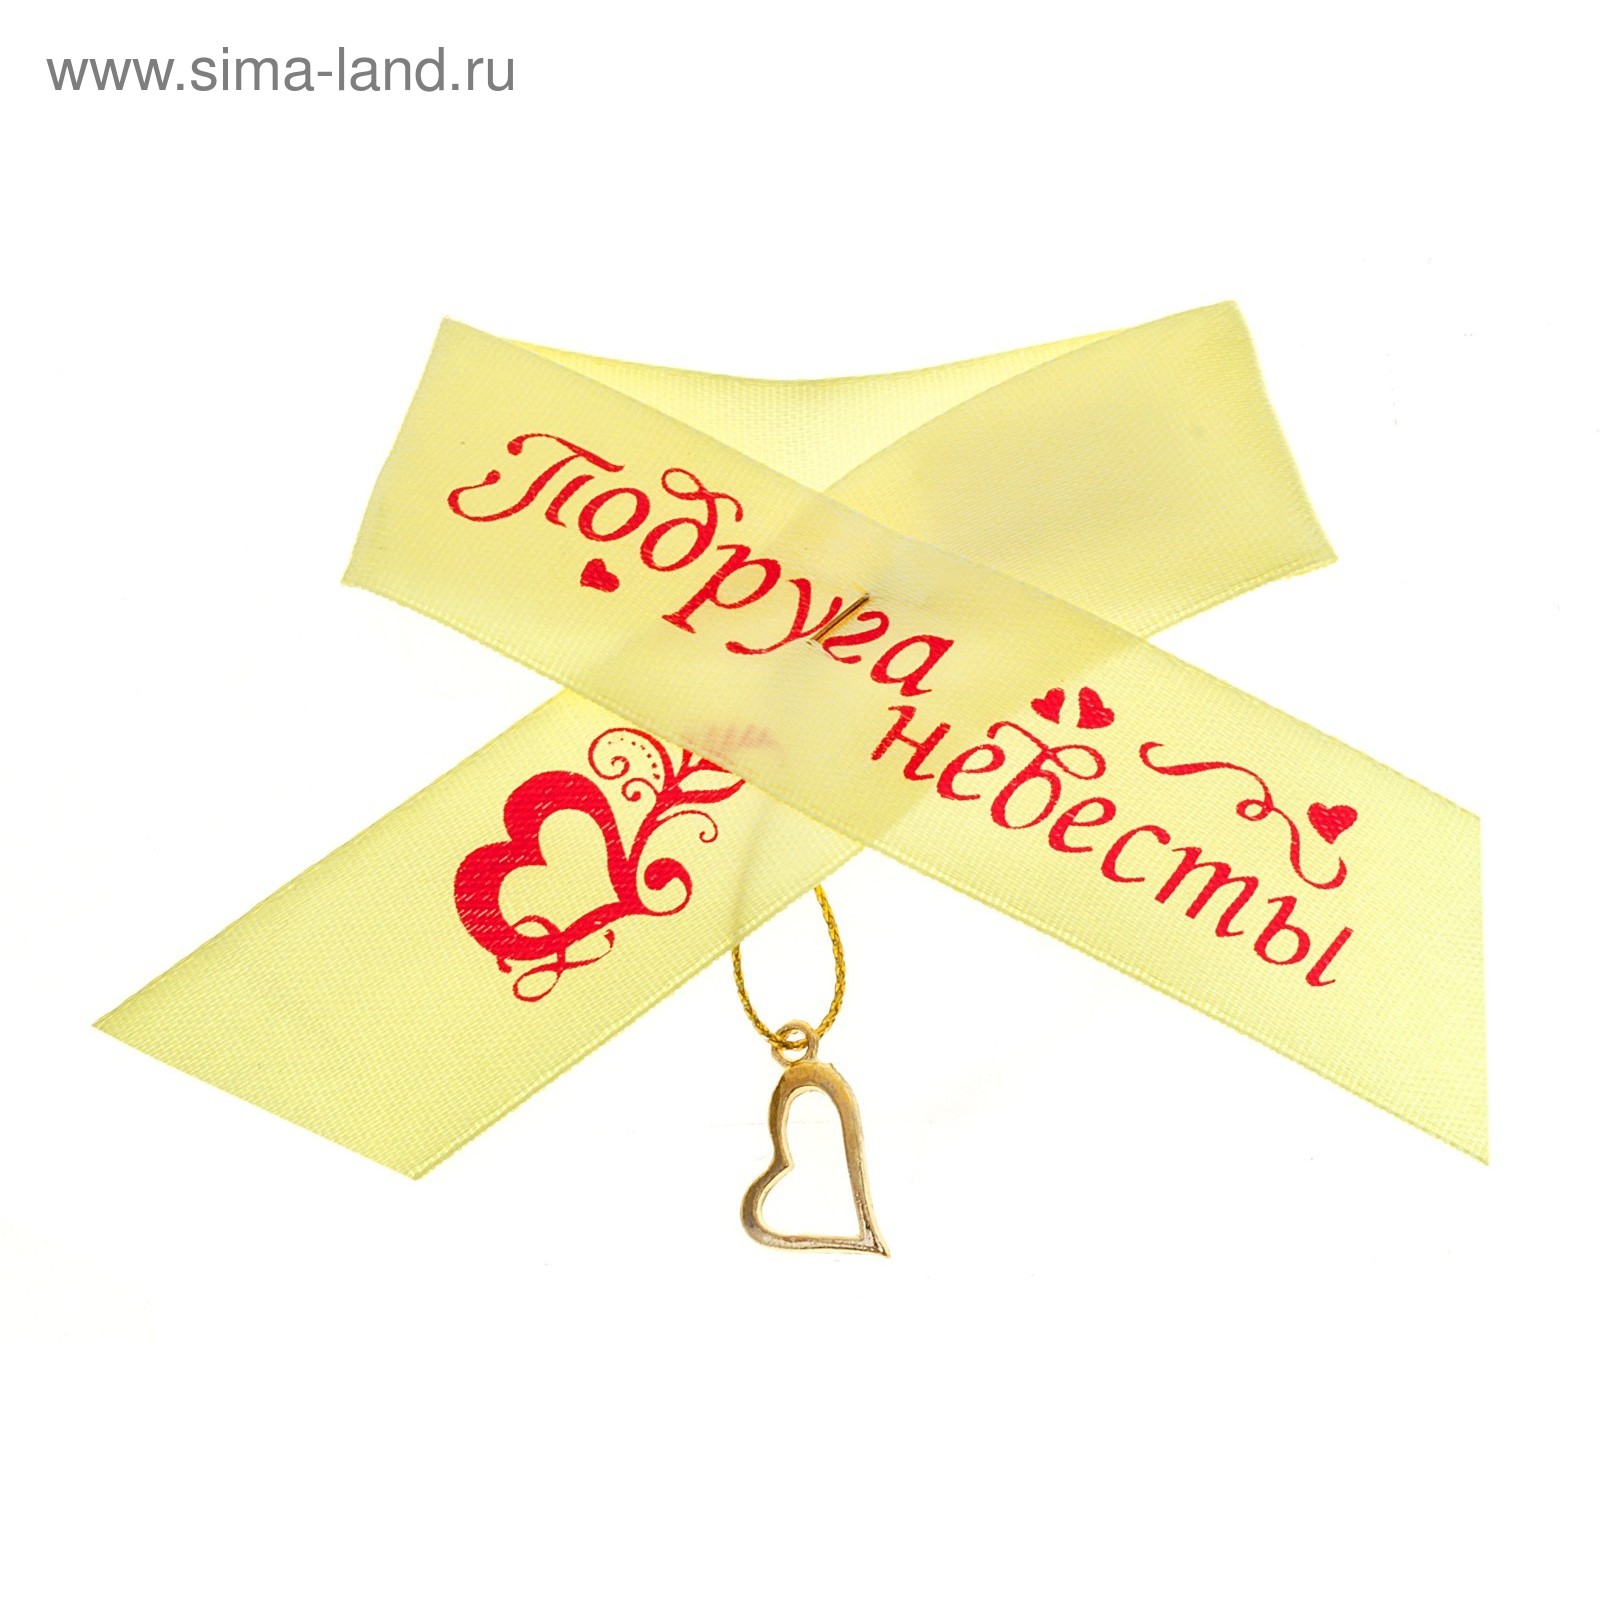 Ленты для друзей жениха и невесты, 2 шт. купить в Москве | Интернет-магазин Веселая Затея